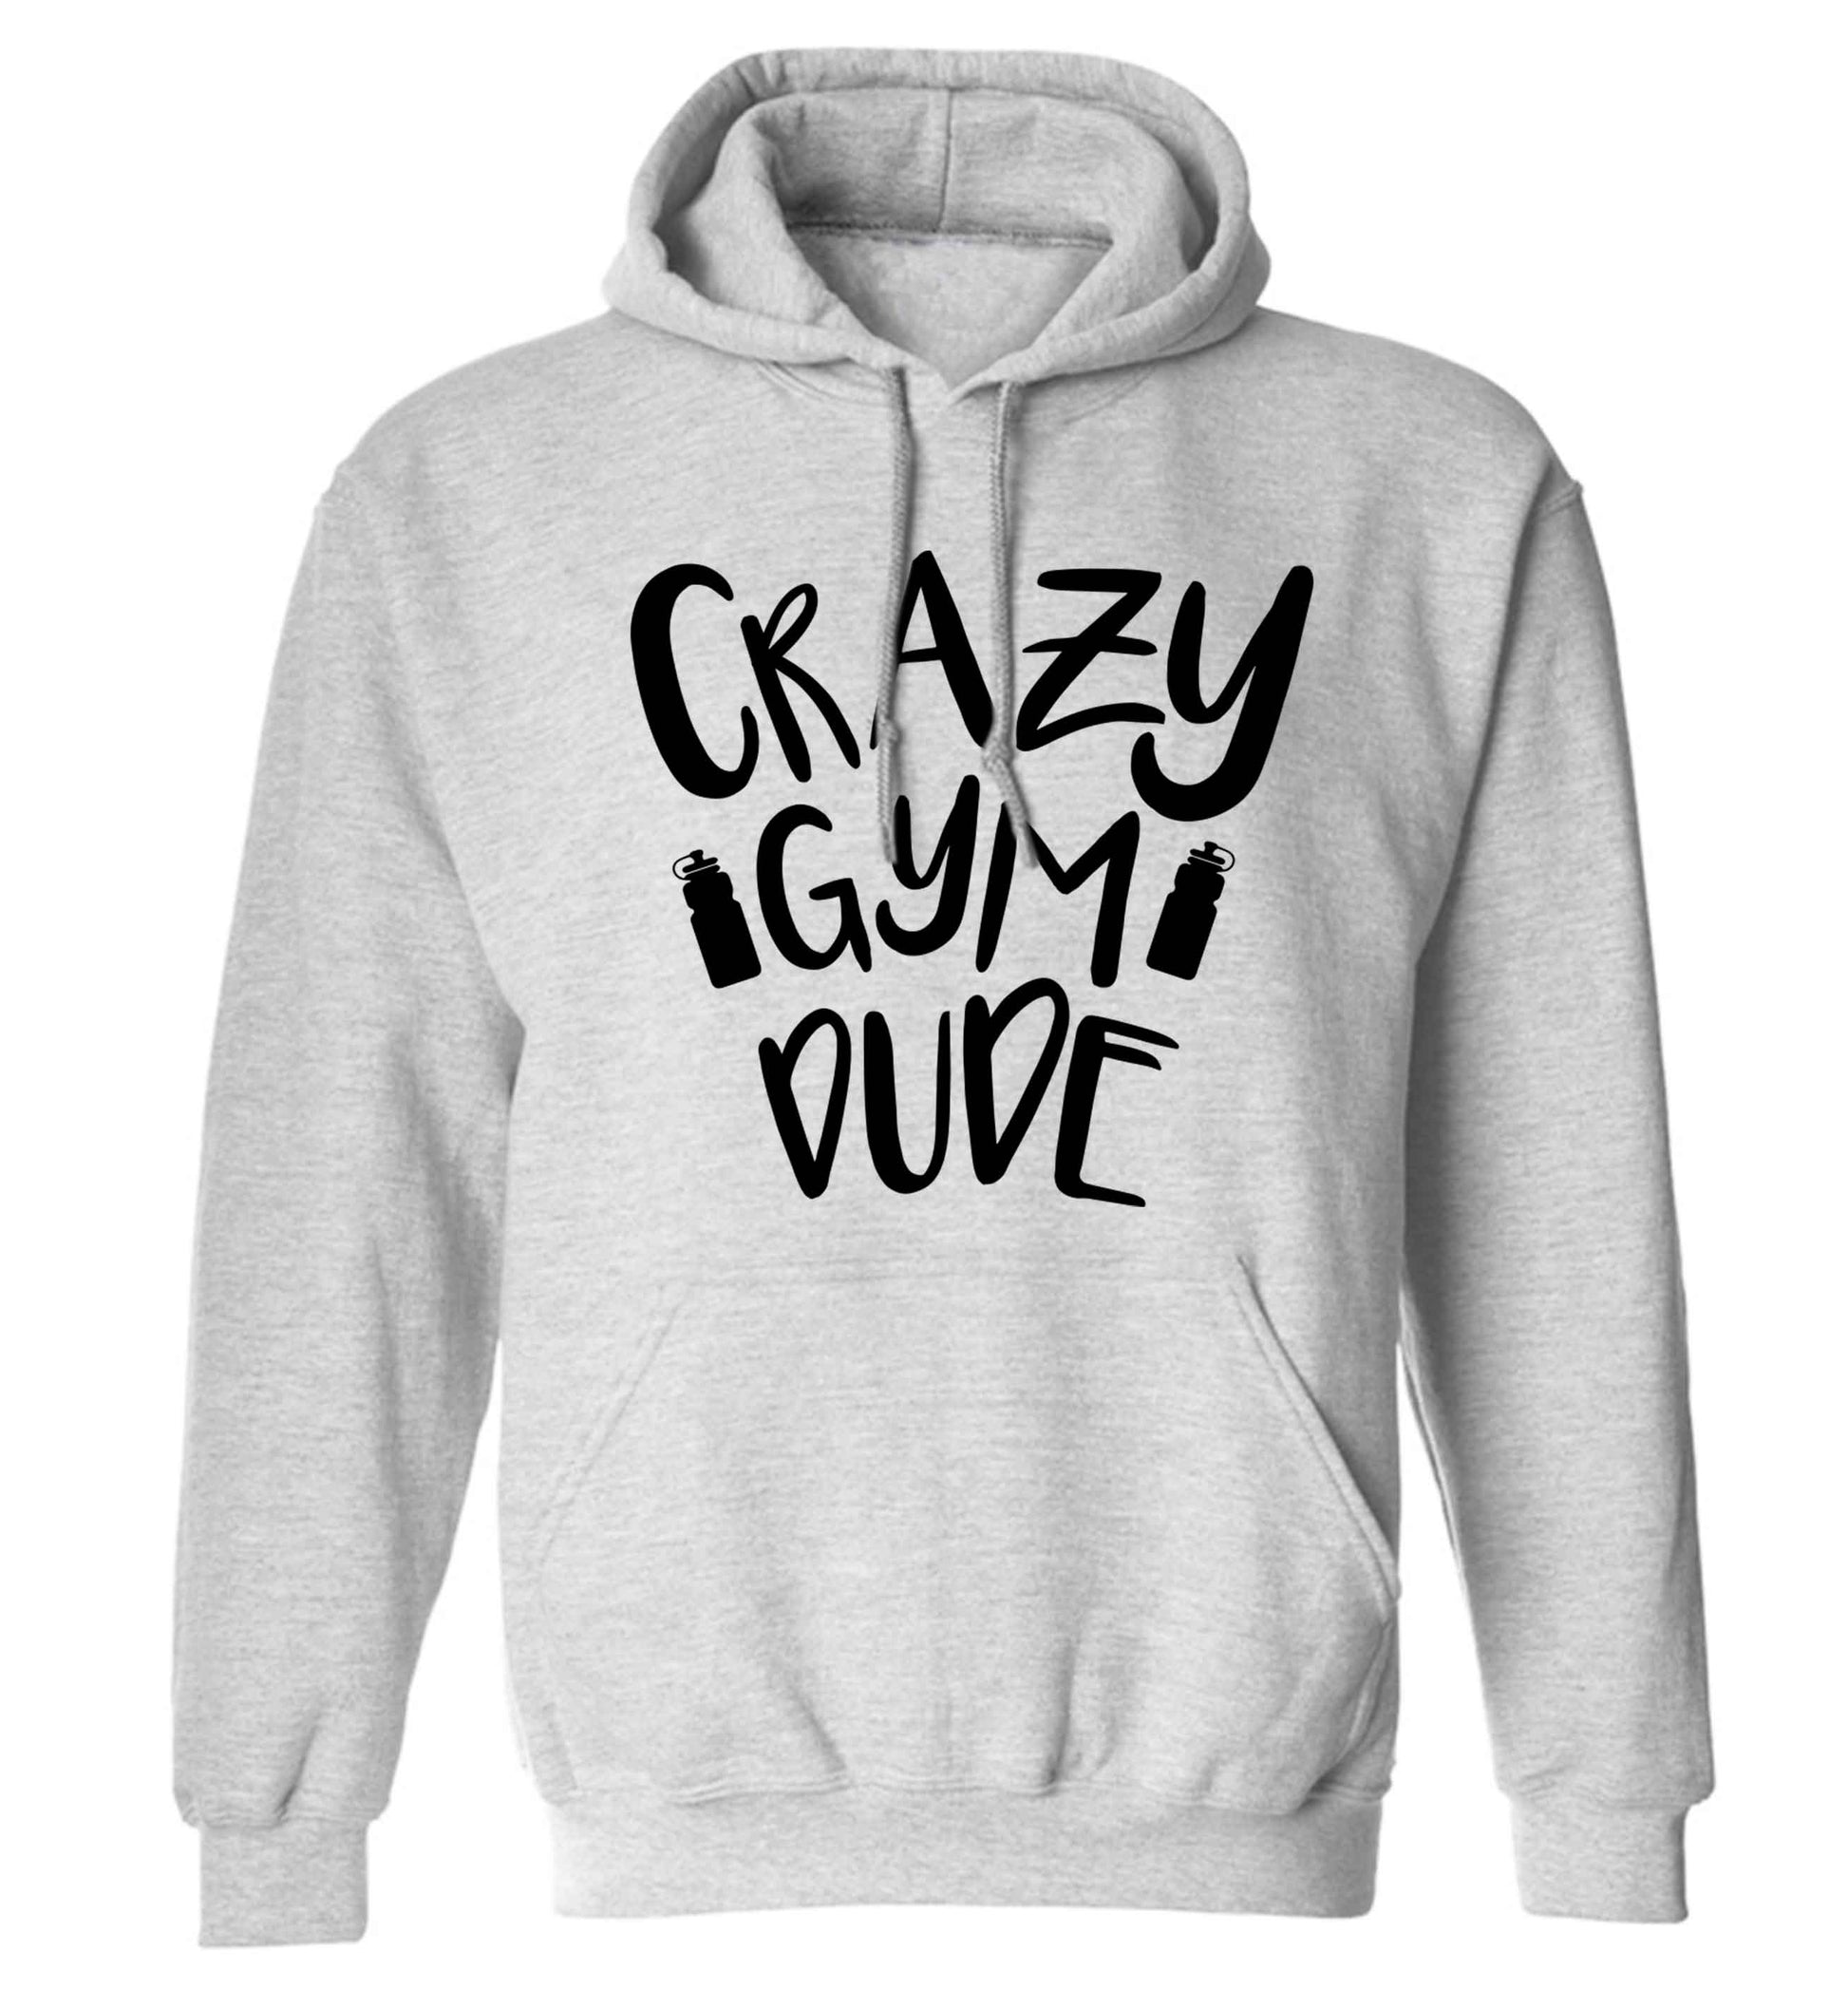 Crazy gym dude adults unisex grey hoodie 2XL